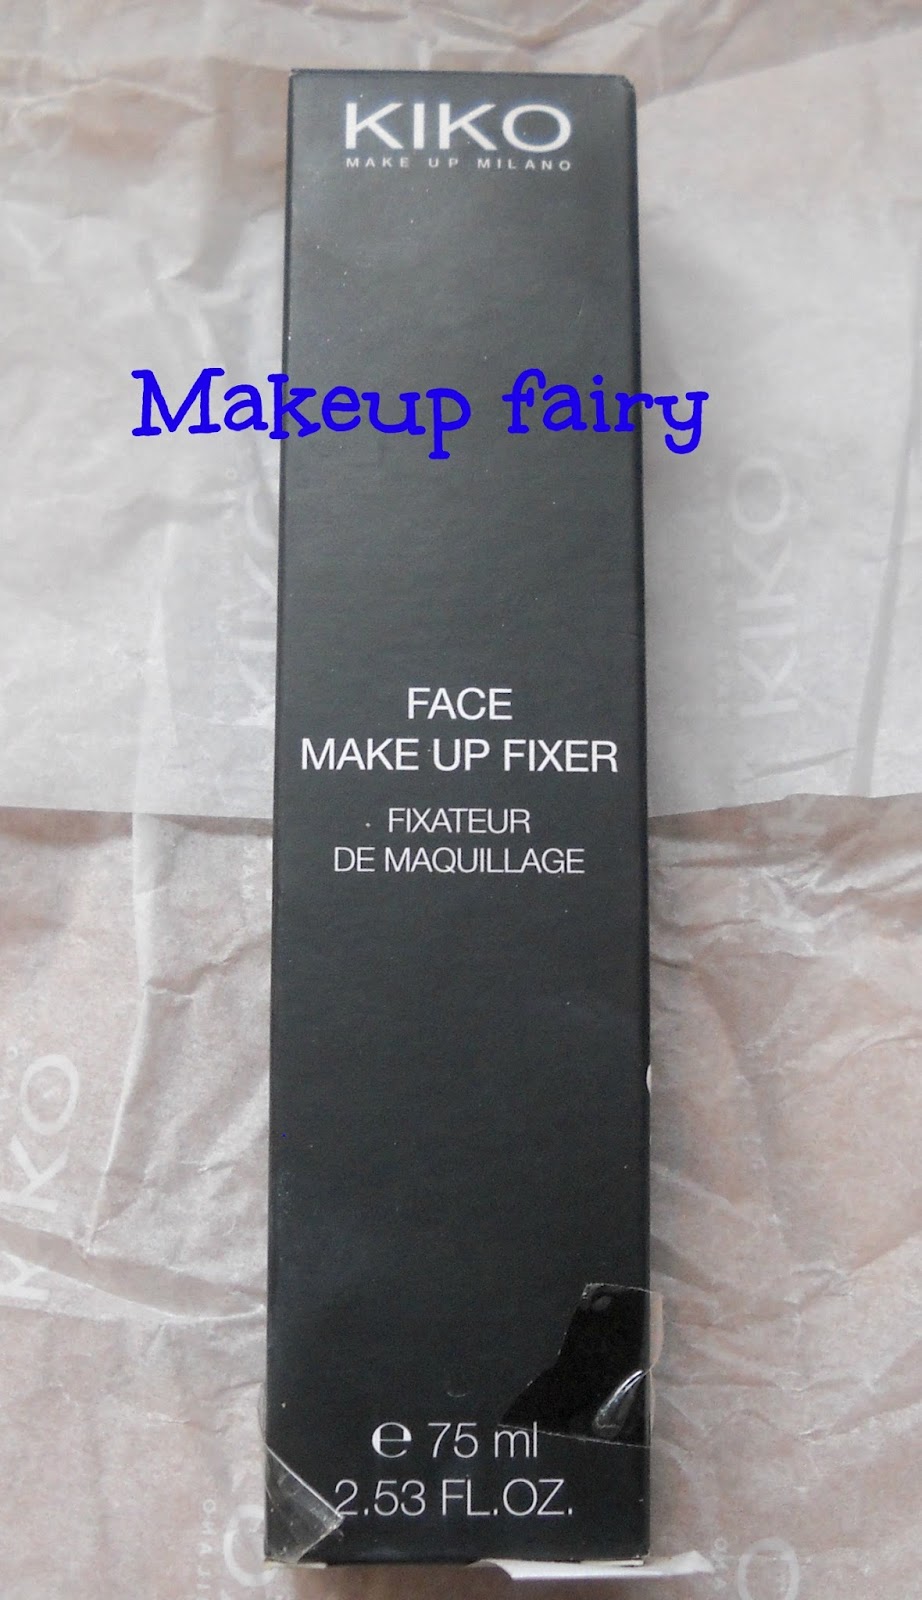 Tinklesmakeup: One product review: kiko spray makeup fixer